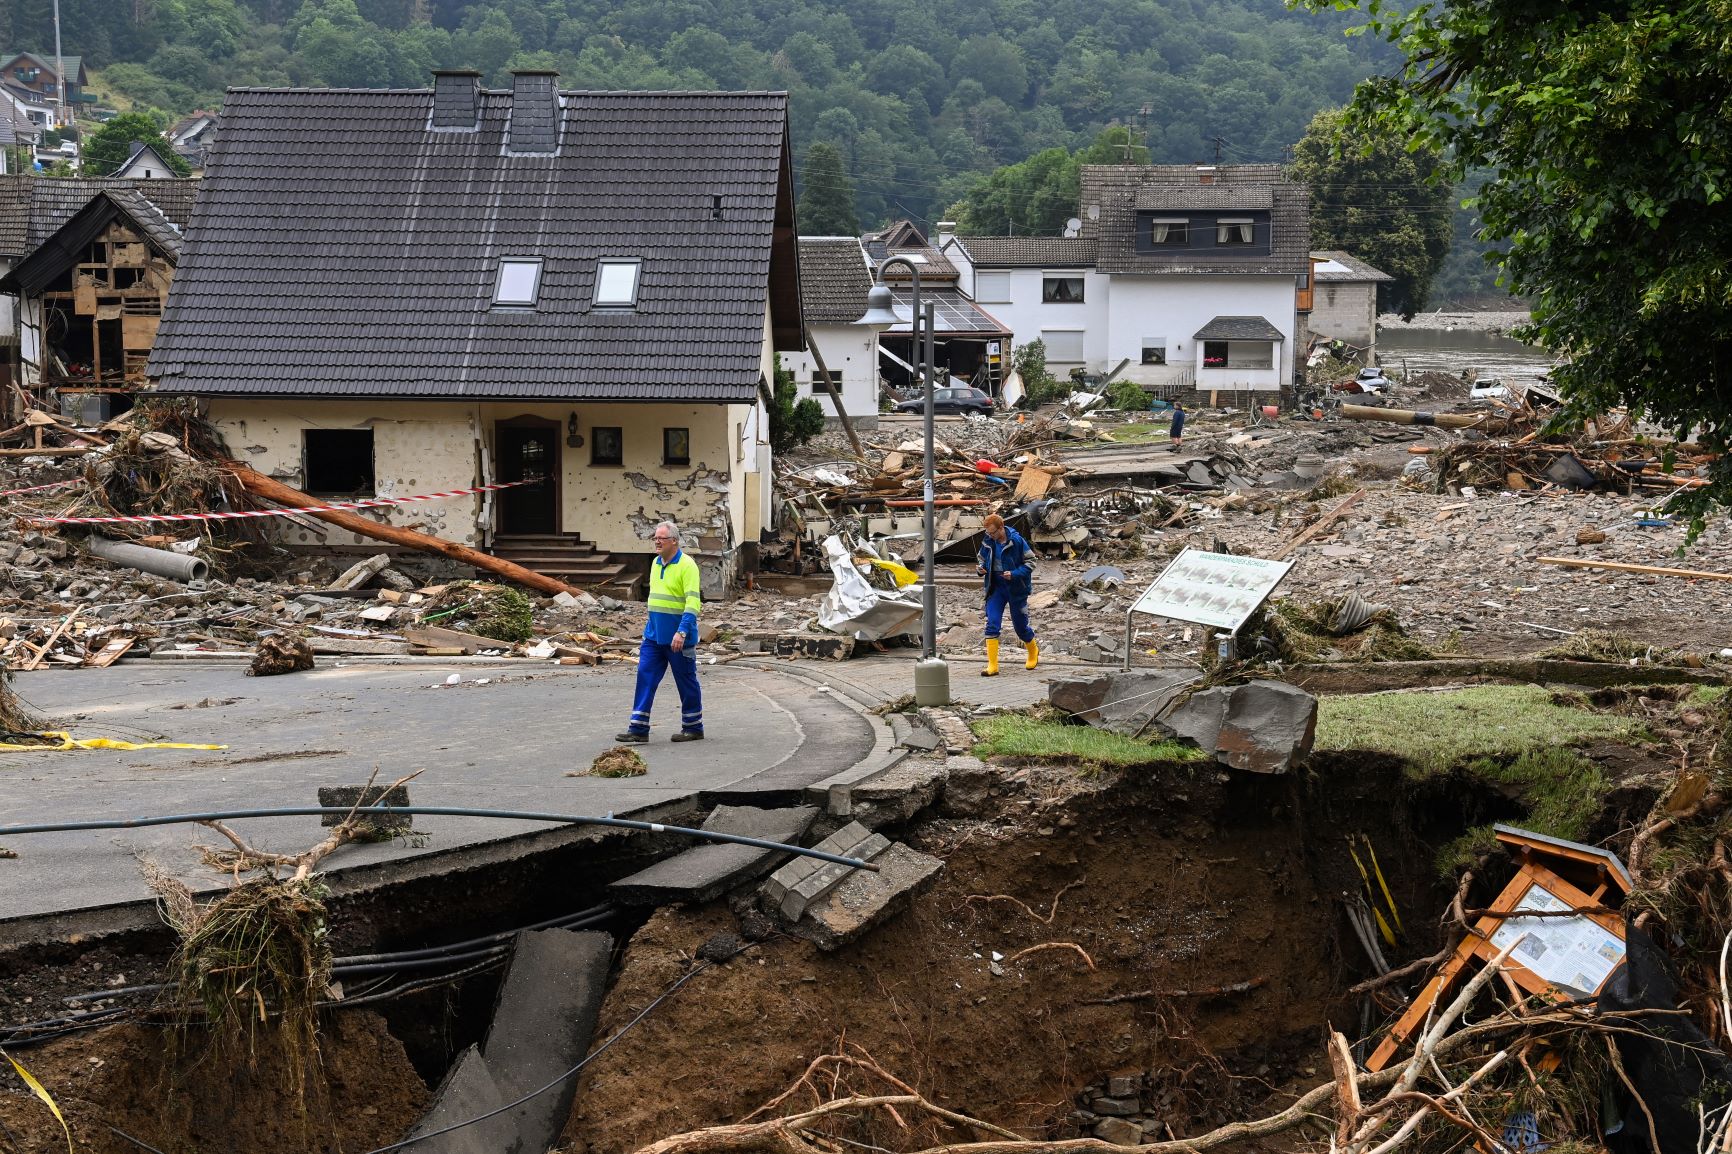 Moradores de Schuld passam por parte da cidade arrasada pelas inundações: alerta disparado pelo serviço meteorológico não chegou a muitas localidades (Foto: Cristof Stache / AFP - 18/07/2021)